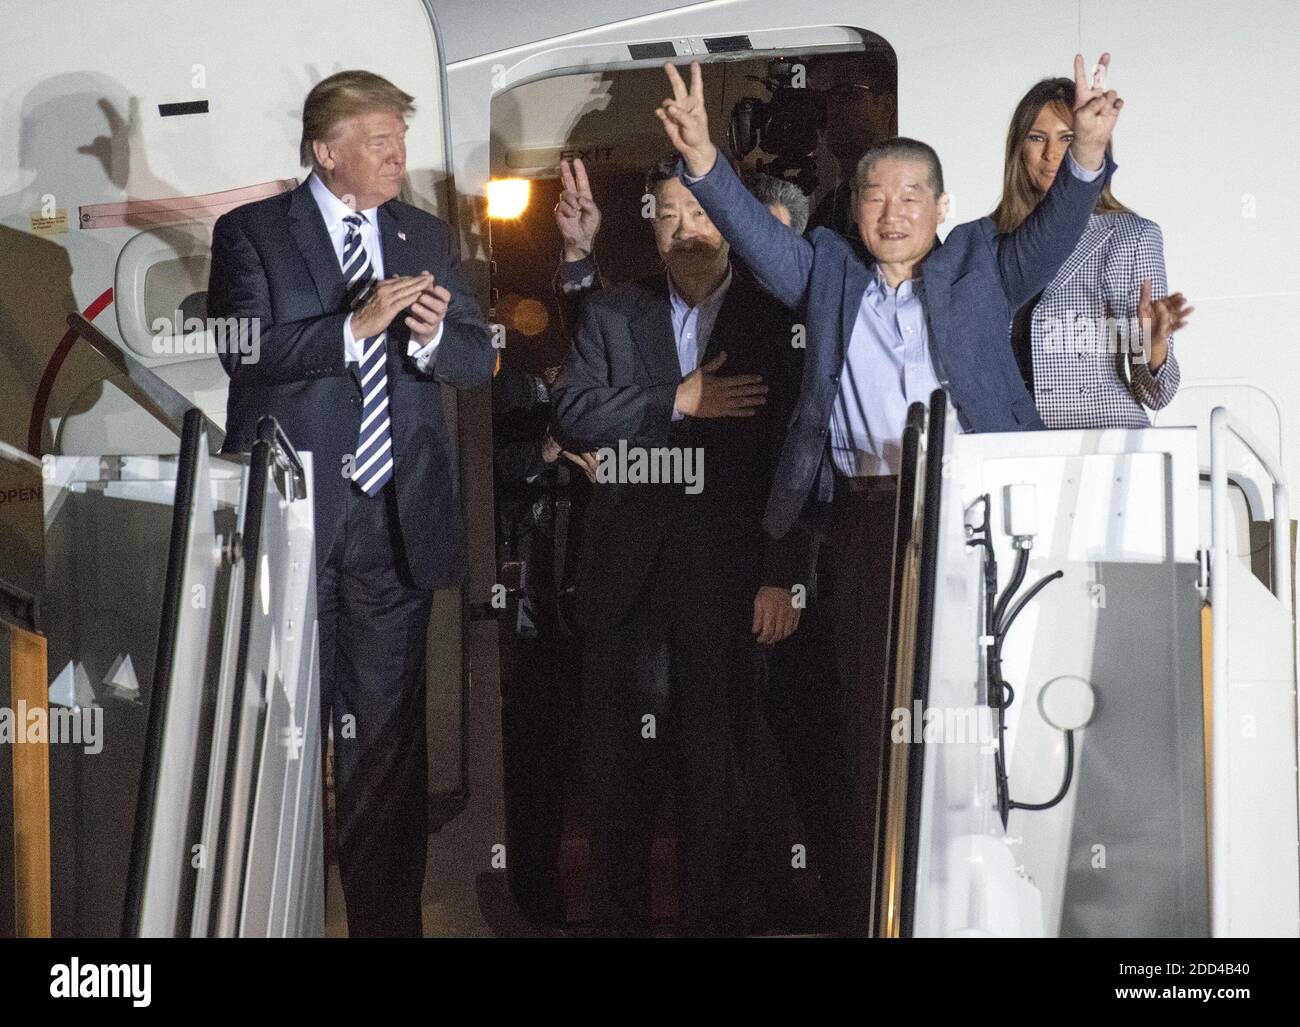 El presidente de Estados Unidos Donald J. Trump da la bienvenida a Kim Dong Chul, Kim Hak Song y Tony Kim de vuelta a Estados Unidos en la base conjunta Andrews en Maryland el jueves, 10 de mayo de 2018. Los tres hombres fueron encarcelados en Corea del Norte durante períodos que van de uno a dos años. Fueron puestos en libertad ante el Secretario de Estado estadounidense Mike Pompeo como un gesto de buena voluntad en la preparación de las conversaciones entre el presidente Trump y el líder norcoreano Kim Jong un. Foto de Ron Sachs/CNP/ABACAPRESS.COM Foto de stock